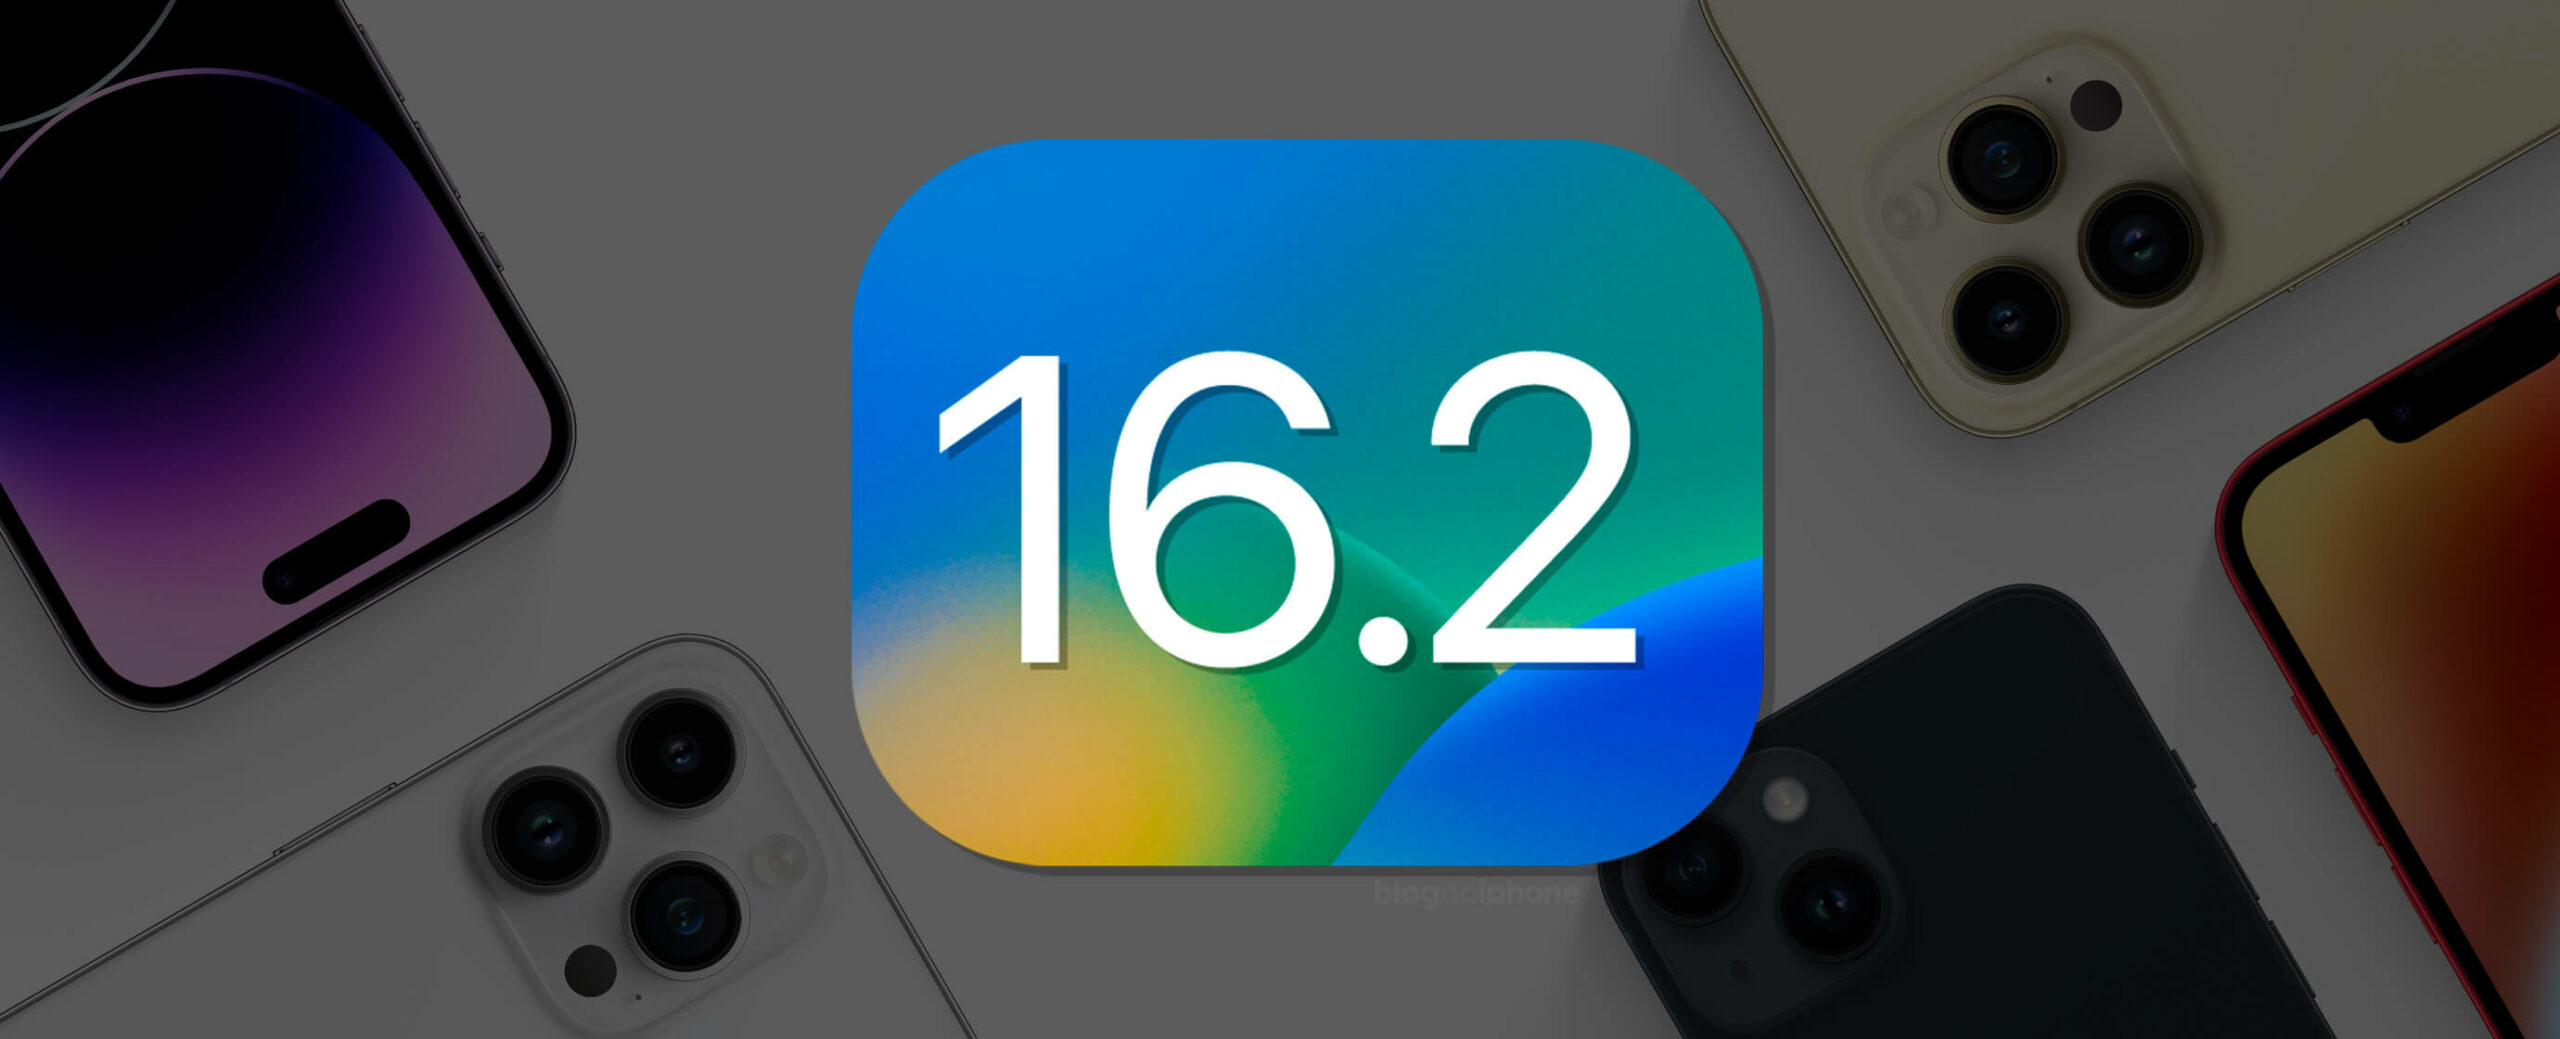 iOS 162